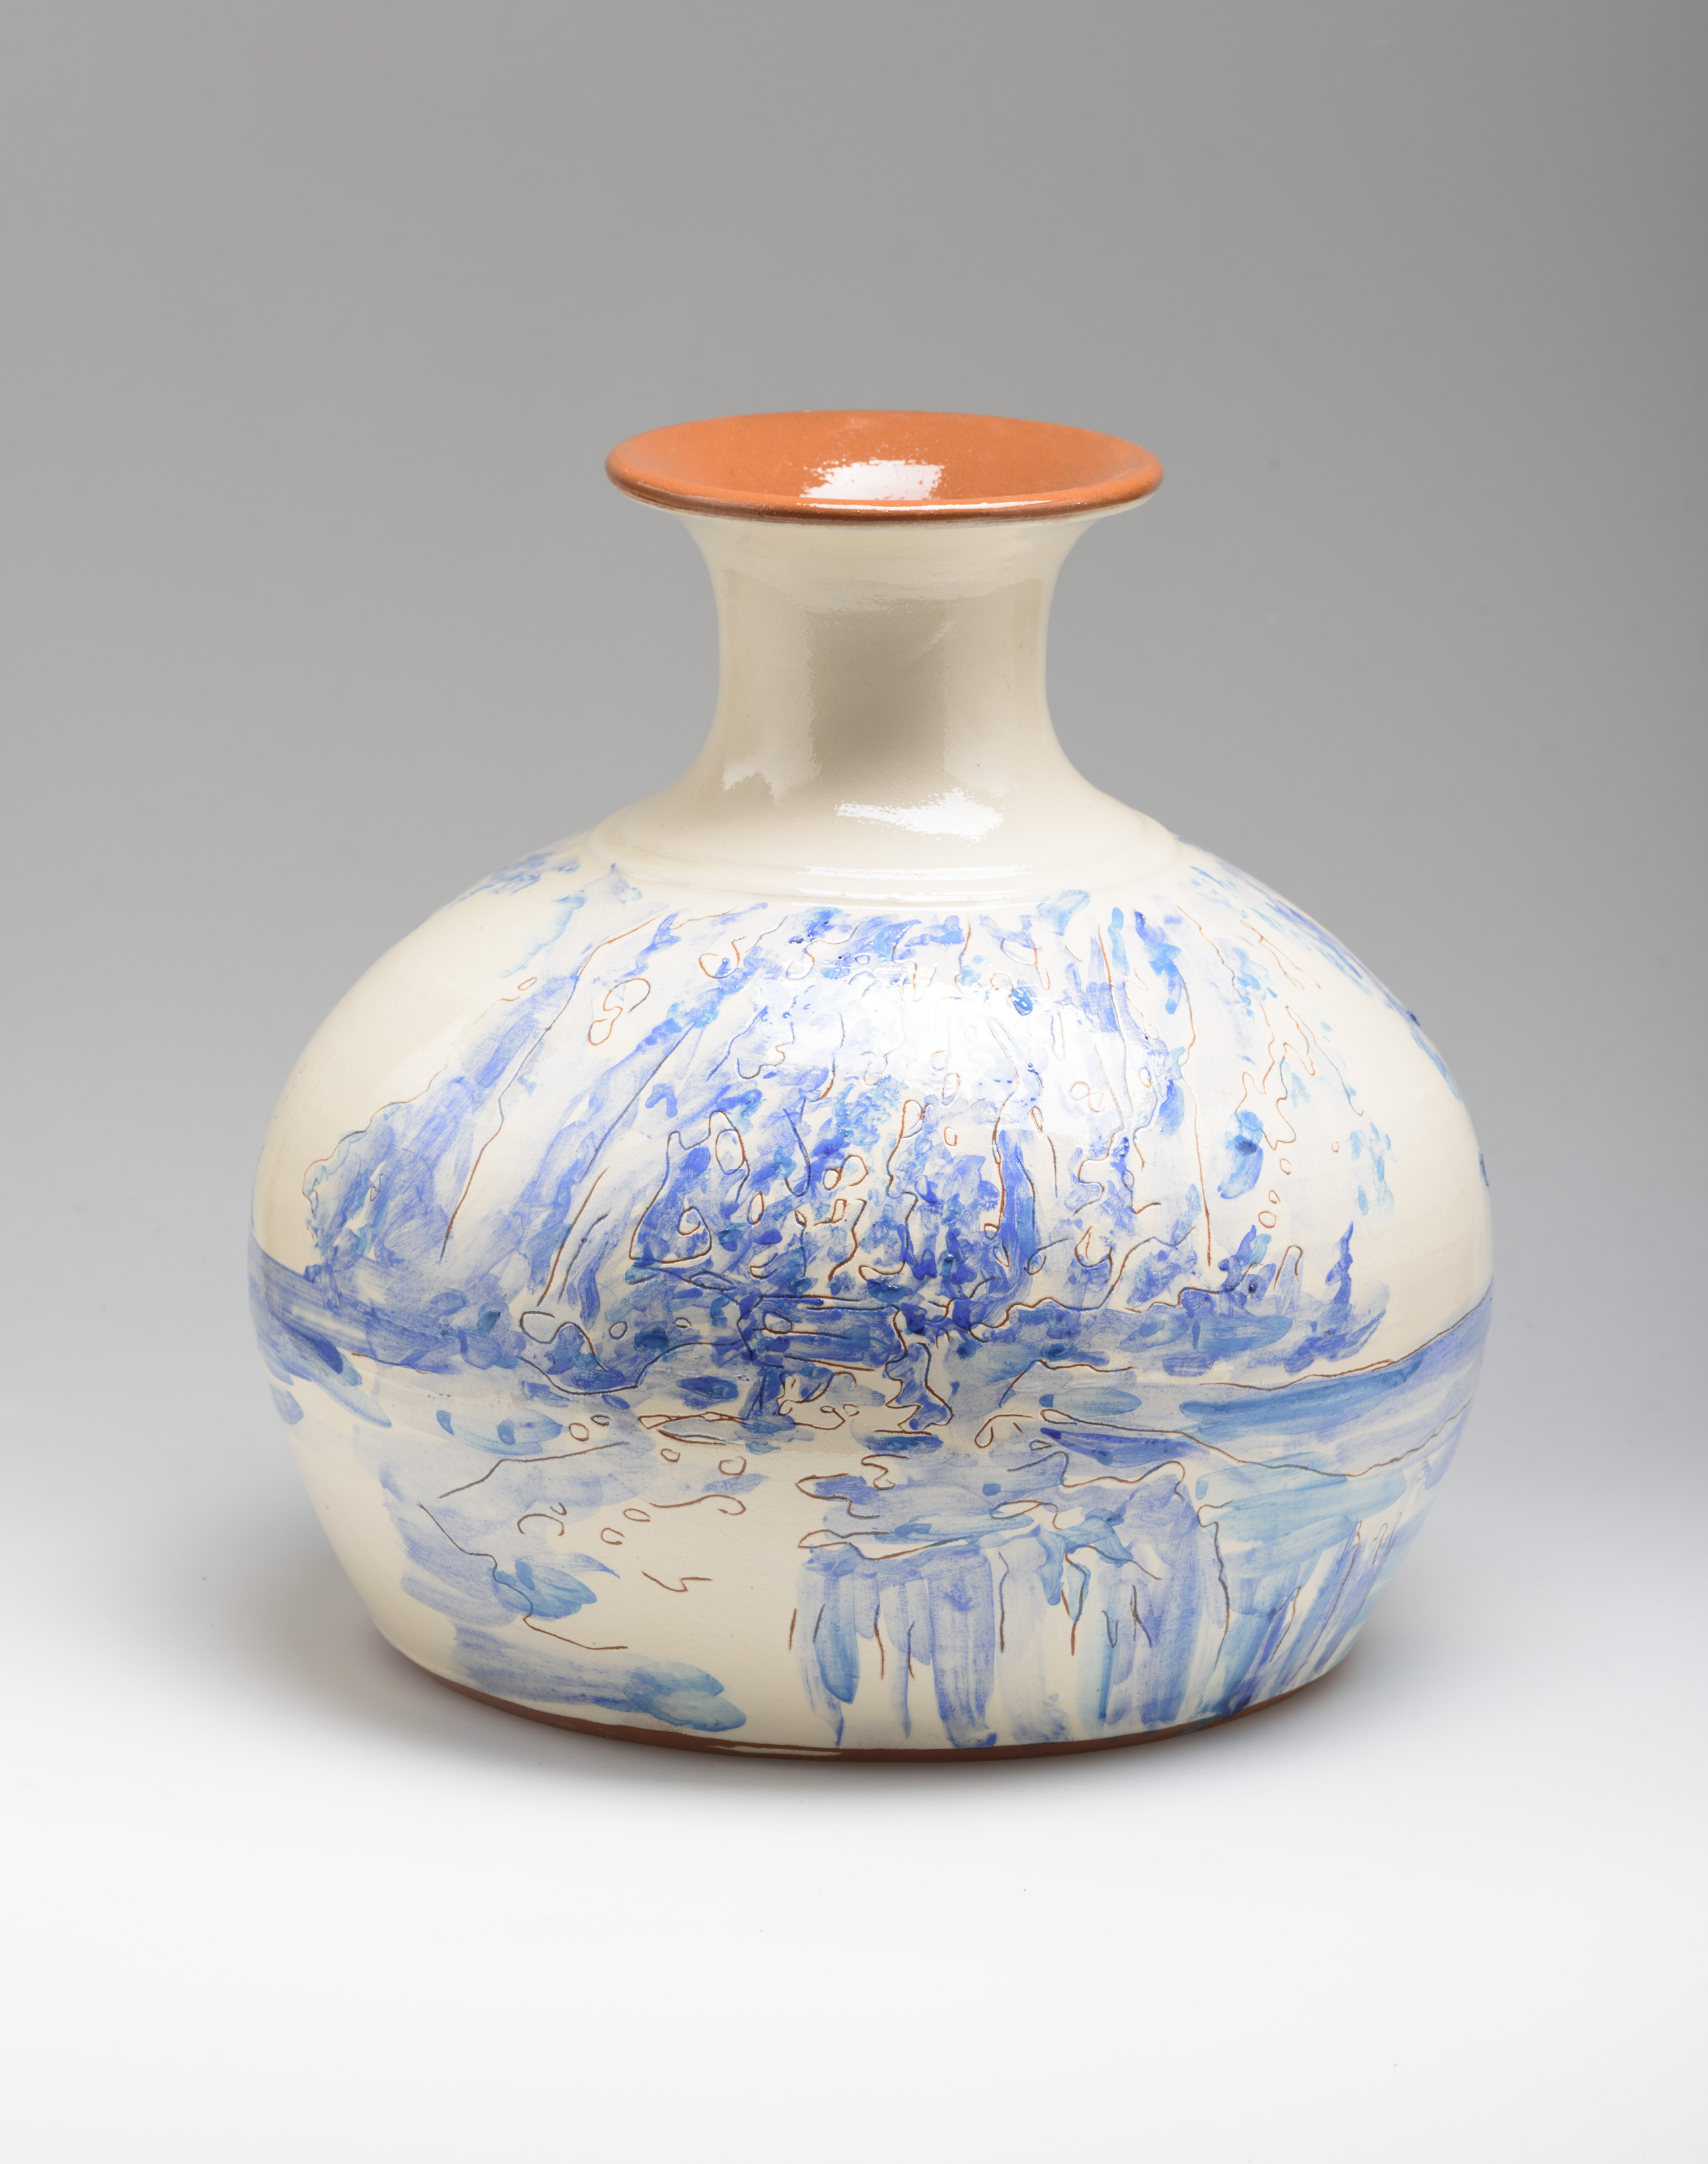 Flower Vase, ceramic, 30 cm. high, Portugal 2015